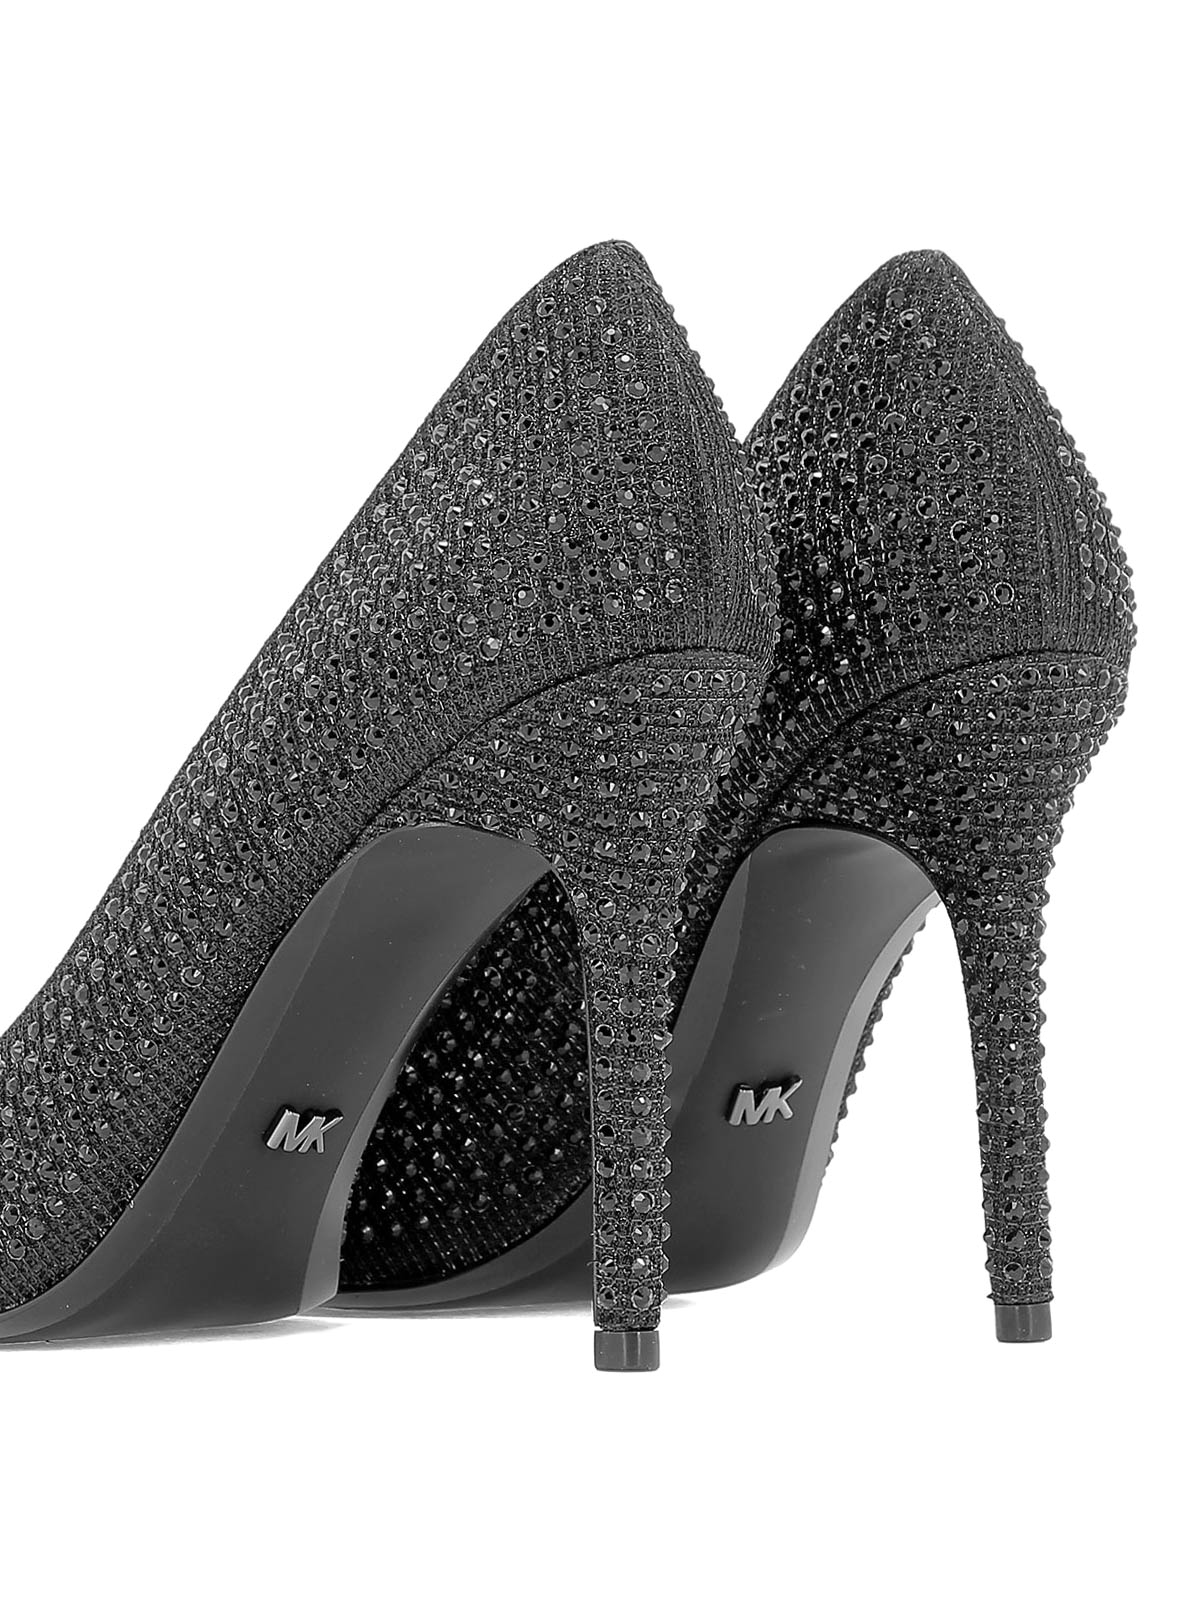 shoes Michael Kors - Claire black rhinestone pumps - 40R9CLHP1D958